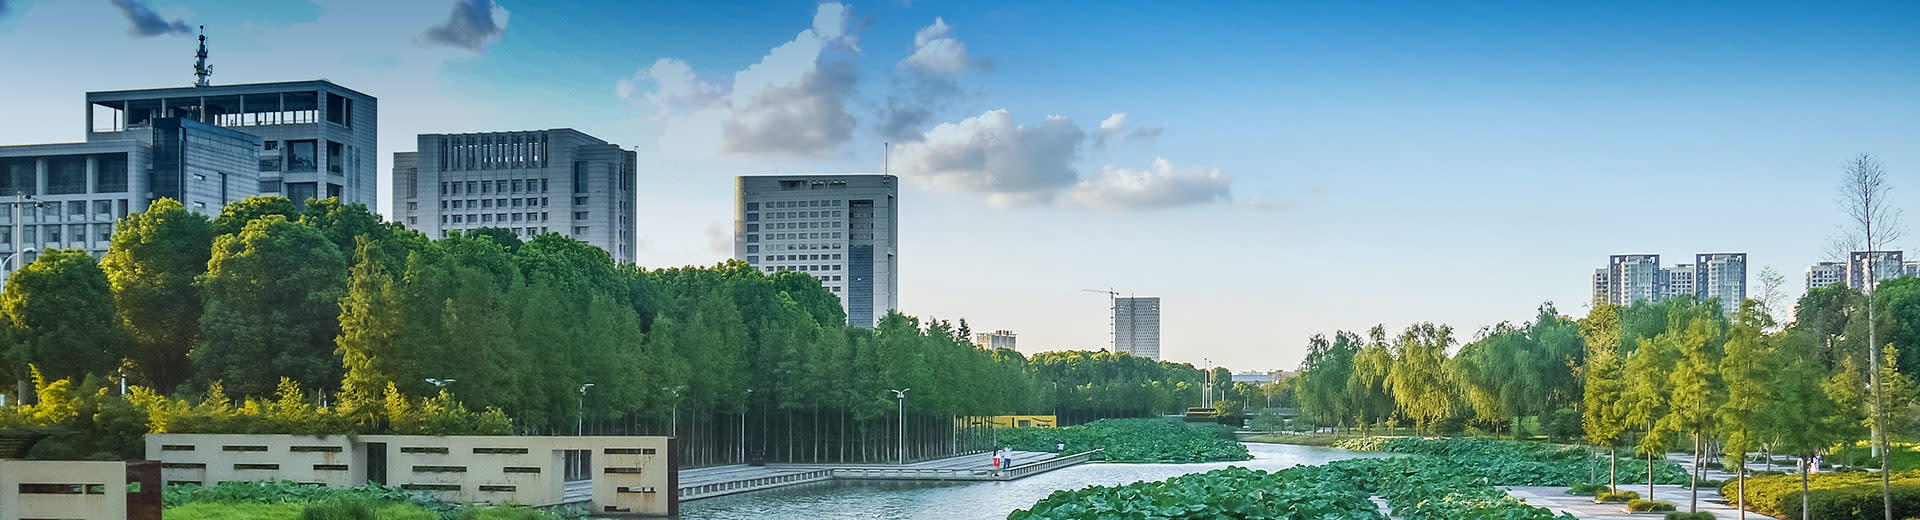 Los imponentes rascacielos surgen de detrás de hileras de árboles verdes en la hermosa ciudad de Ningbo.